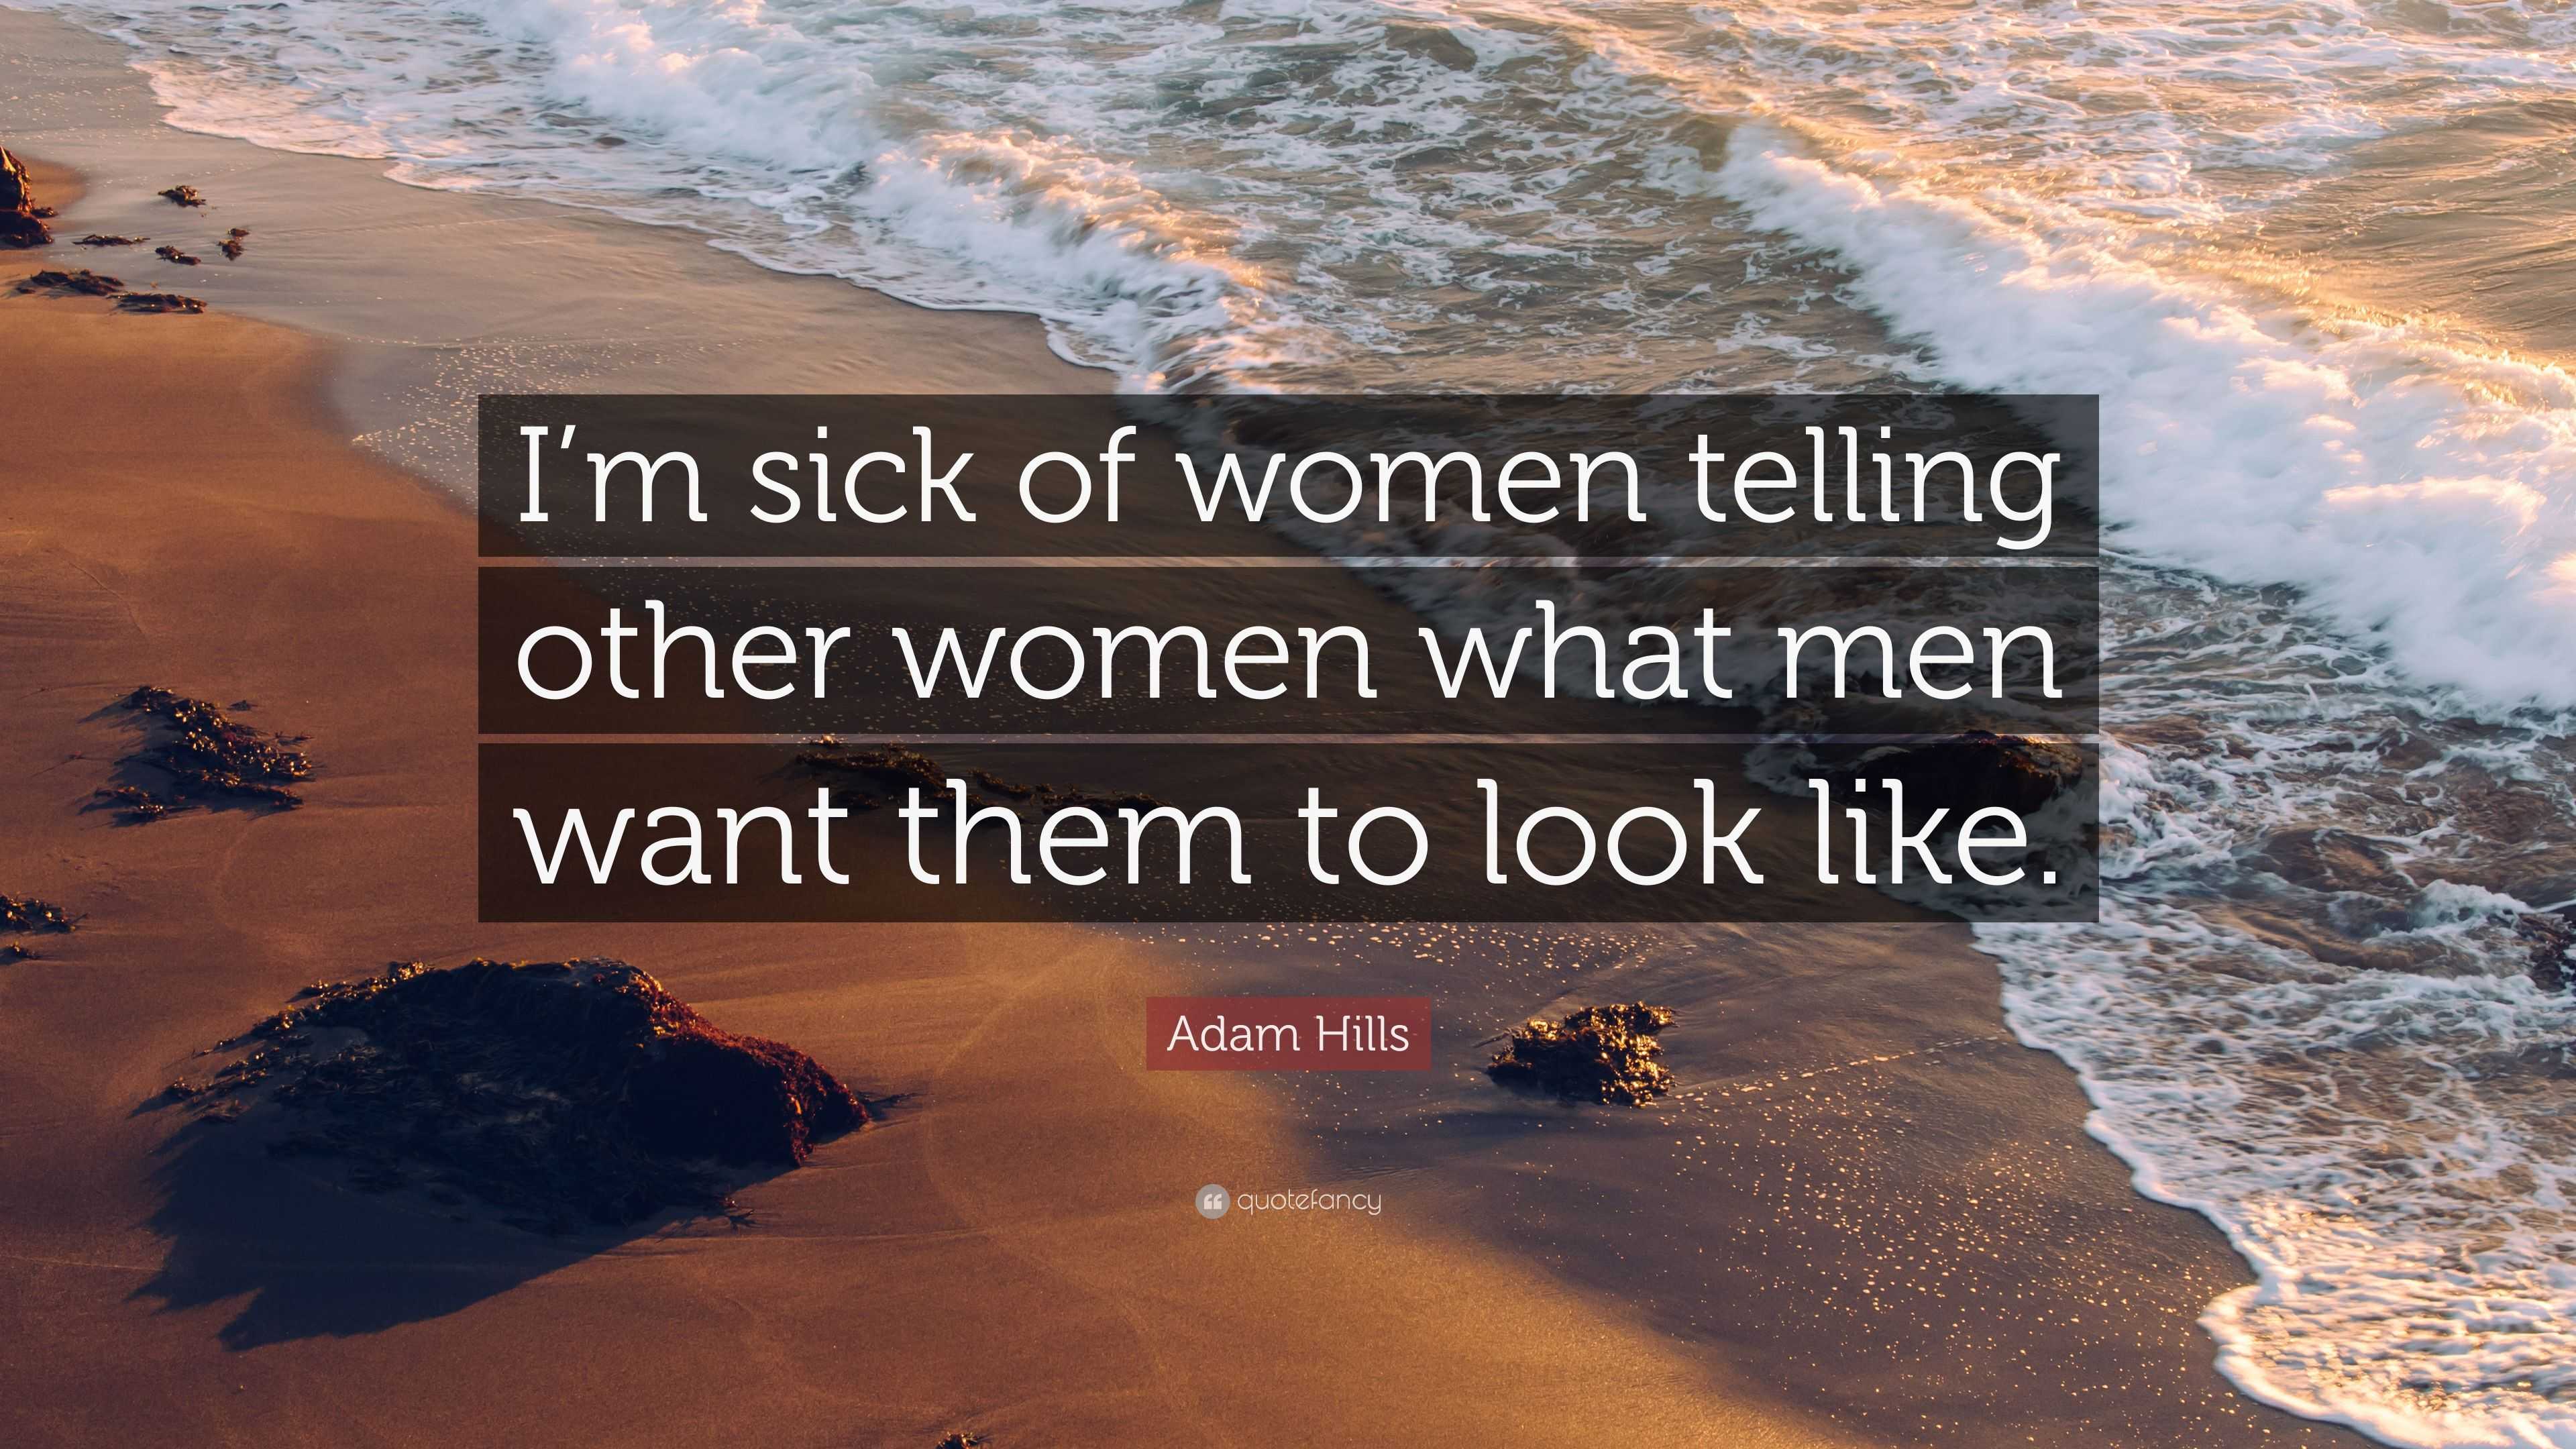 https://quotefancy.com/media/wallpaper/3840x2160/3304101-Adam-Hills-Quote-I-m-sick-of-women-telling-other-women-what-men.jpg